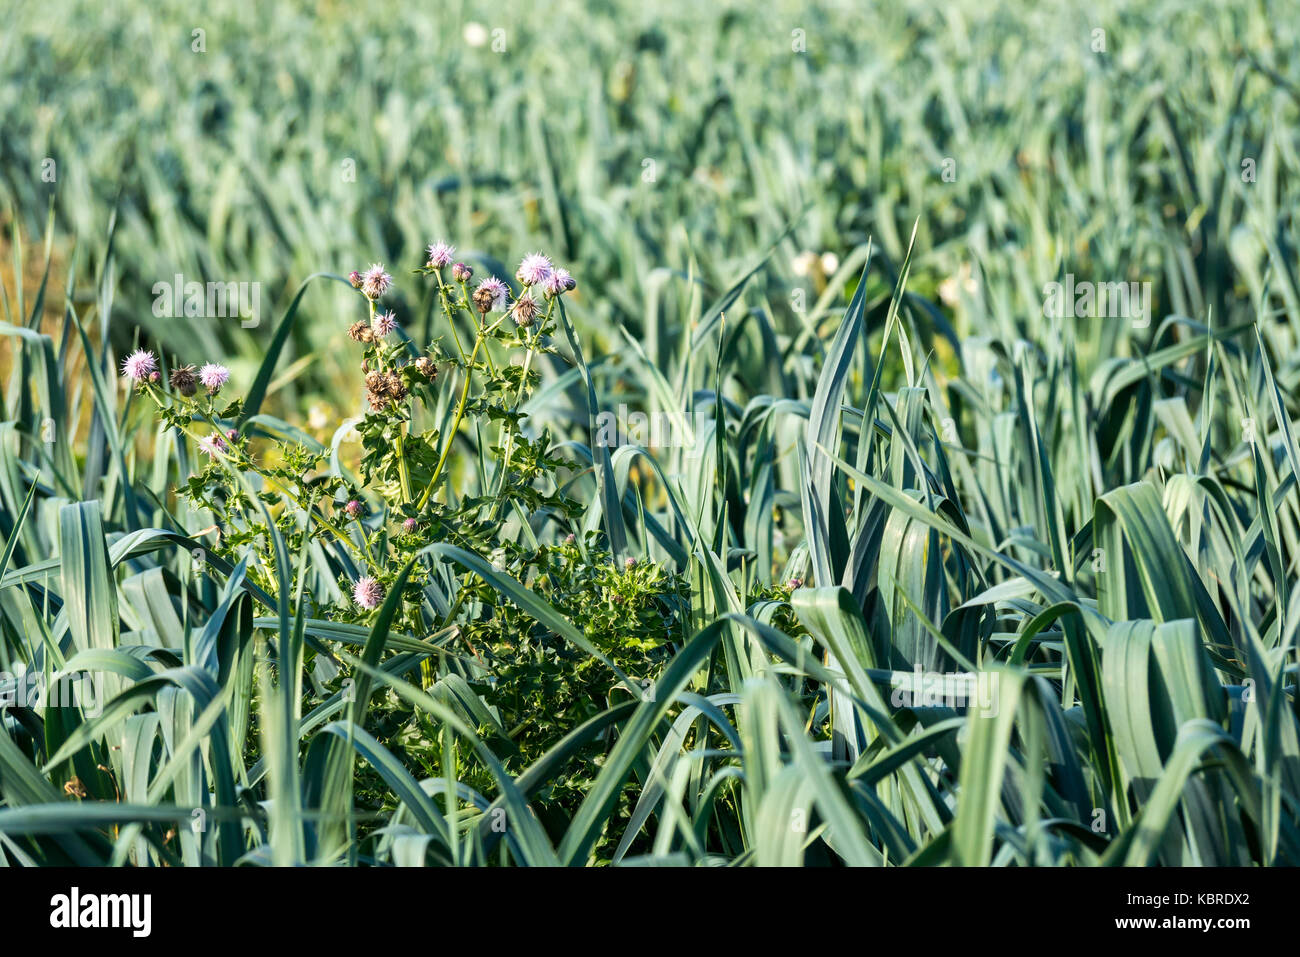 Basso in prospettiva di porro raccolto di piante che crescono in campo con il thistle erbacce, East Lothian, Scozia, Regno Unito Foto Stock